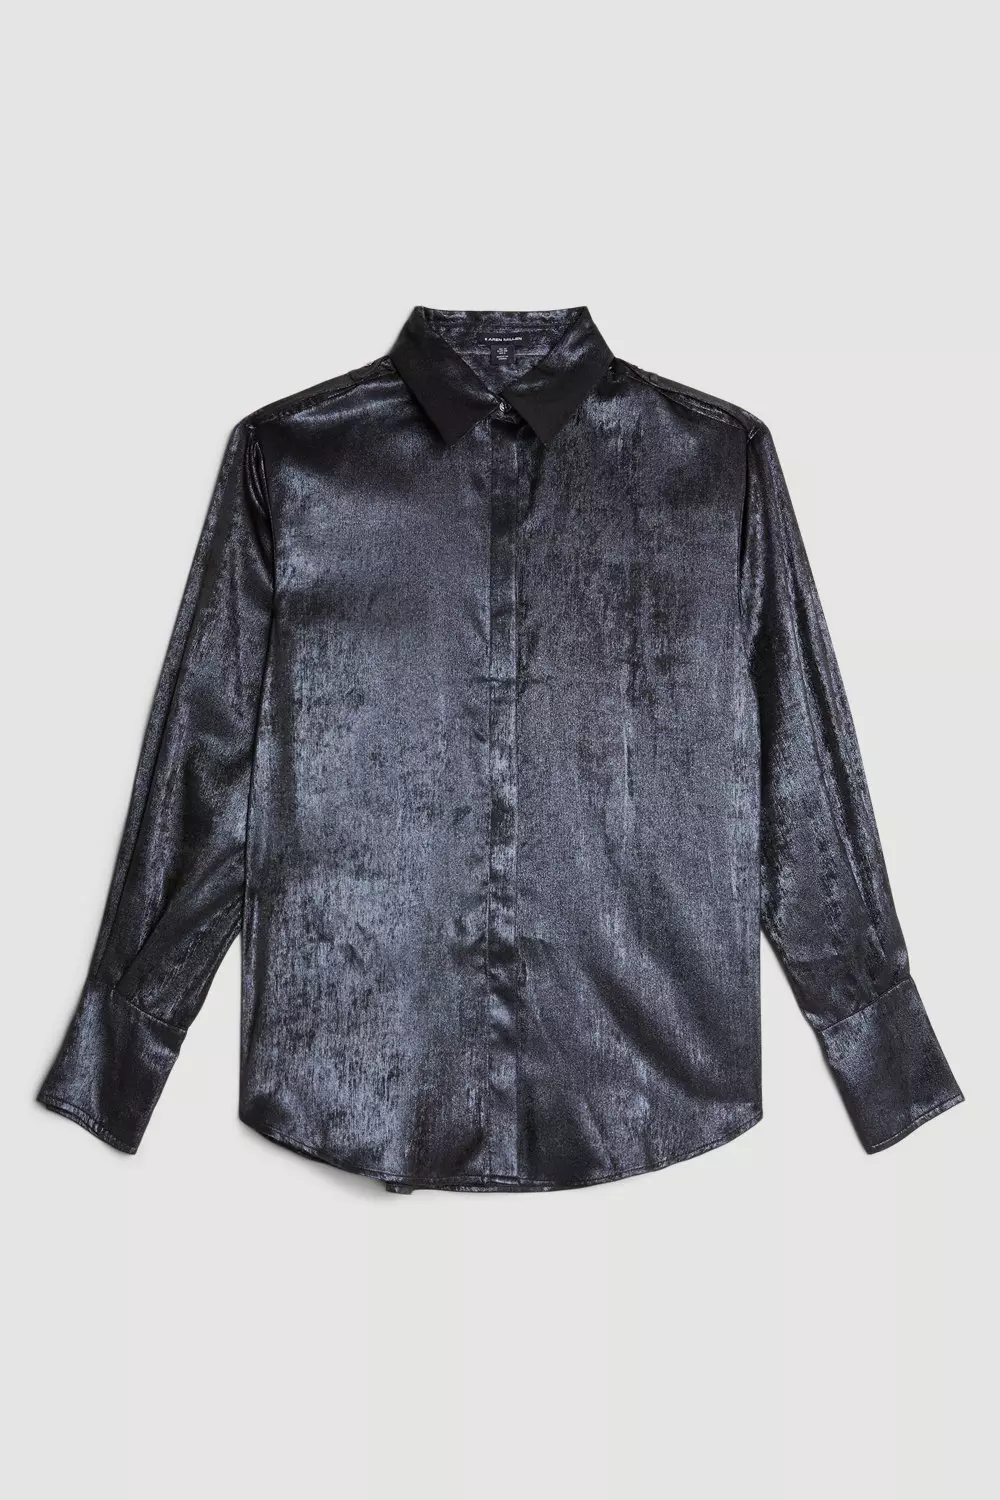 Metallic Long Sleeve Collared Woven Shirt | Karen Millen